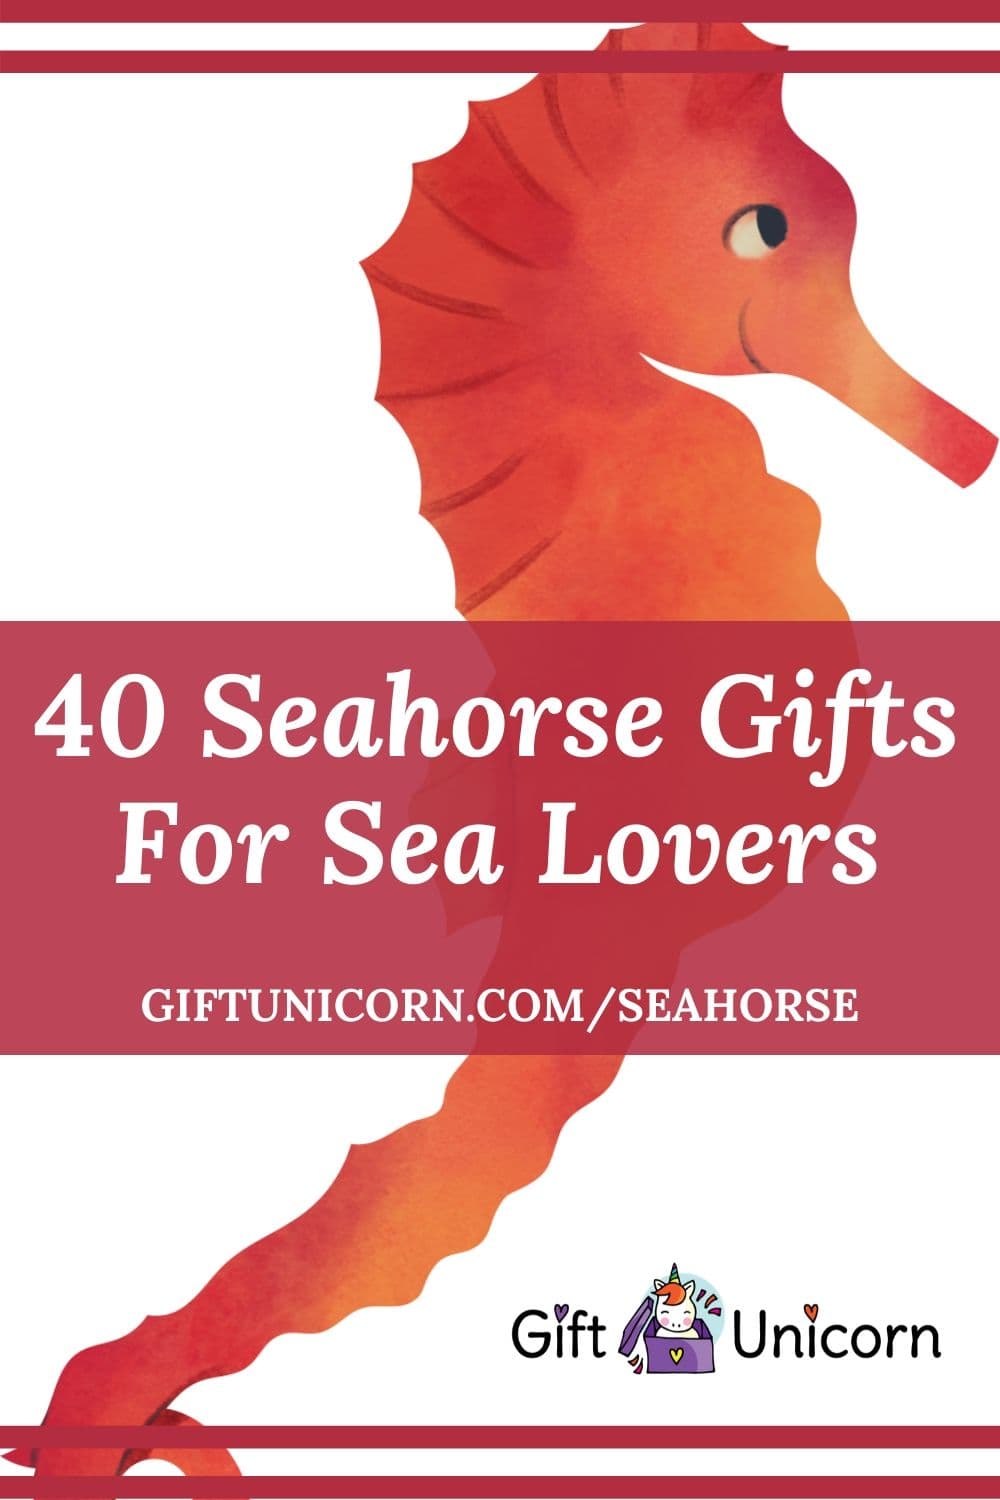 40 seahorse gifts pin image